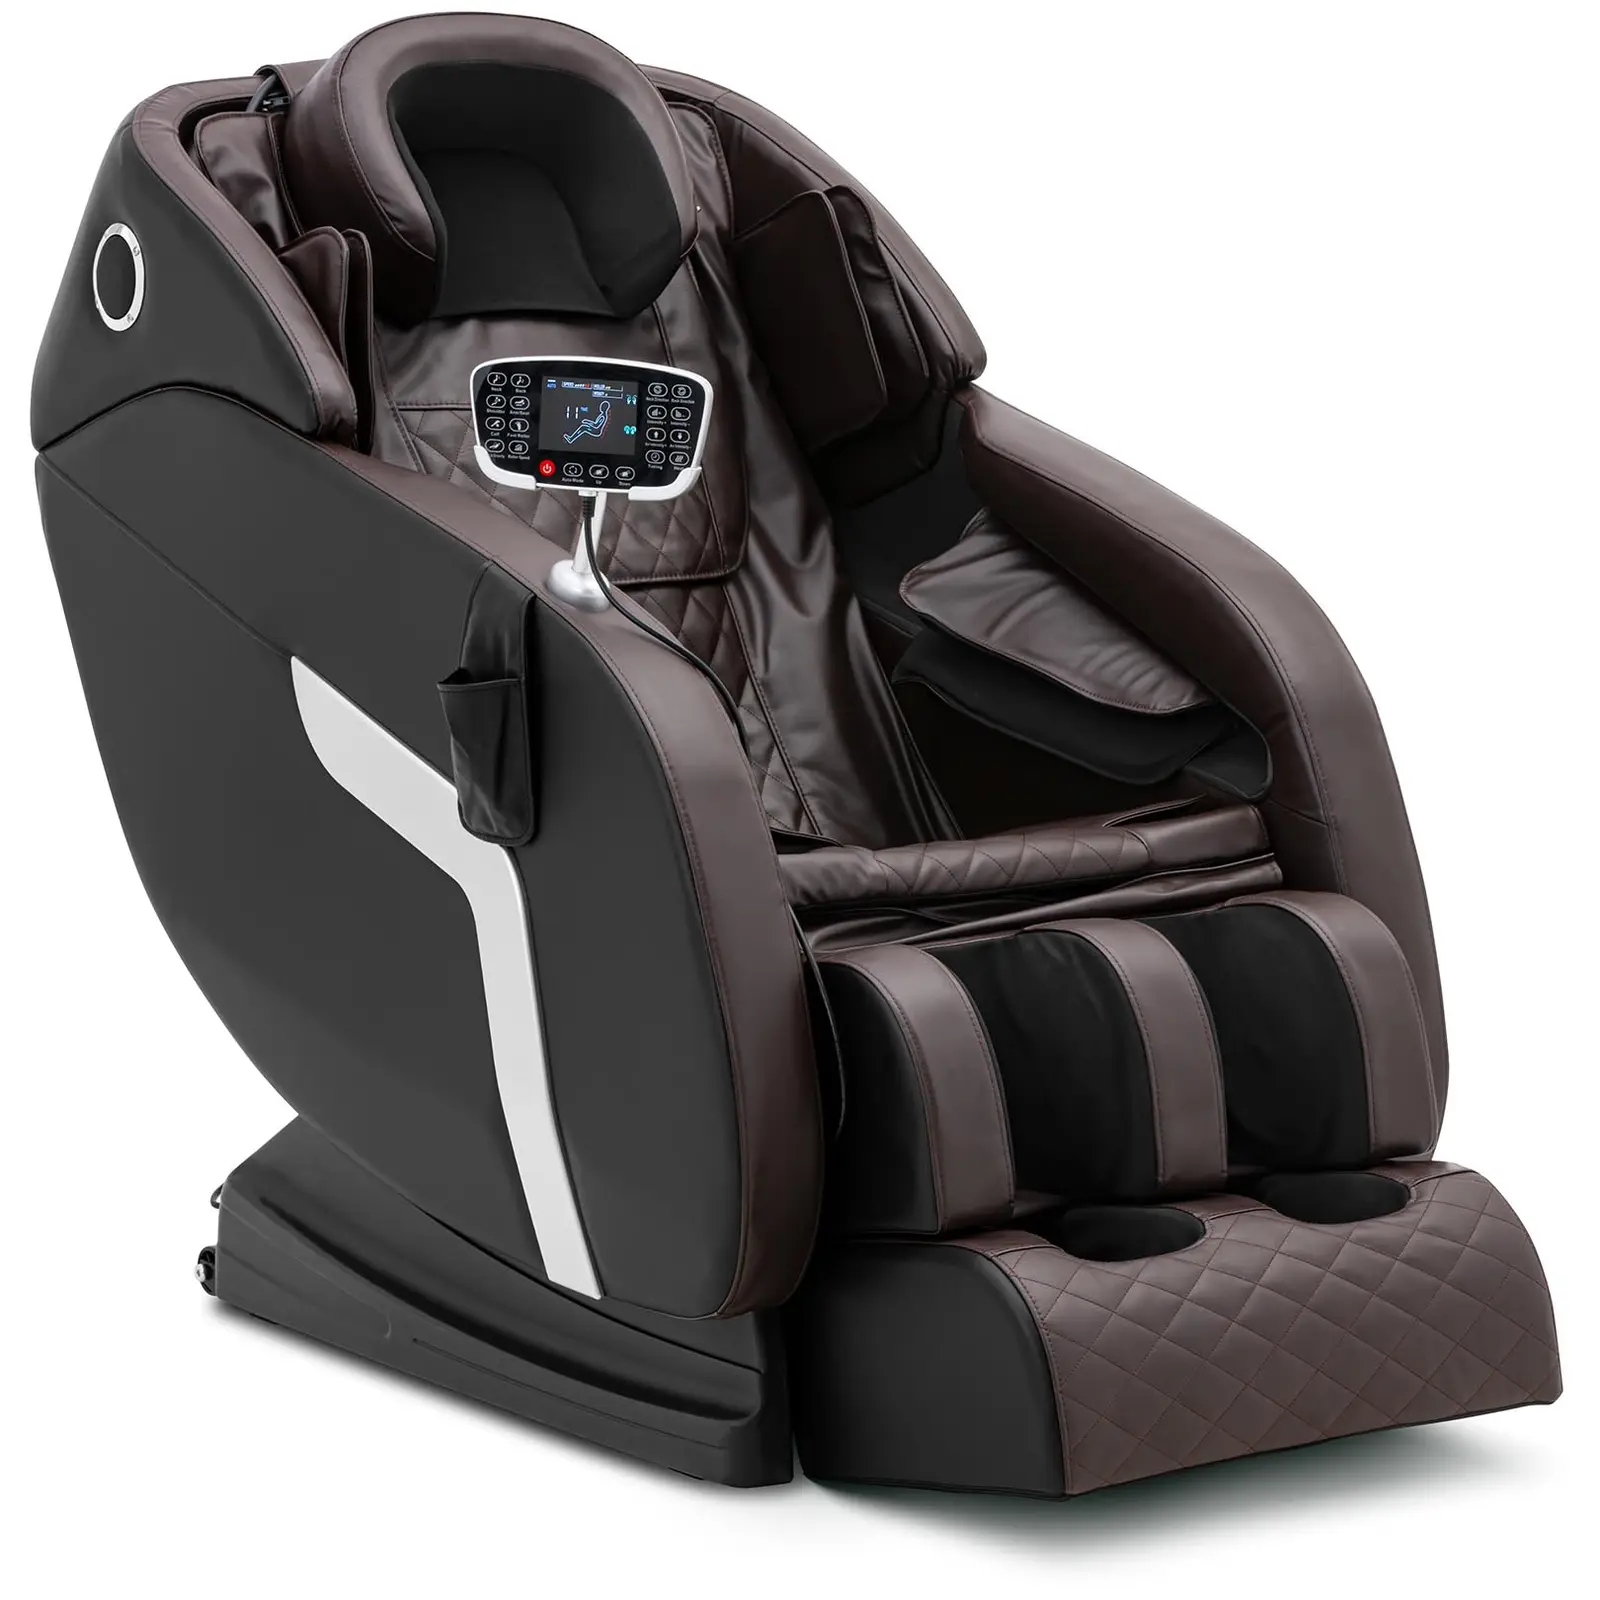 Heated massage chair - zero gravity - 20 programmes - black/brown